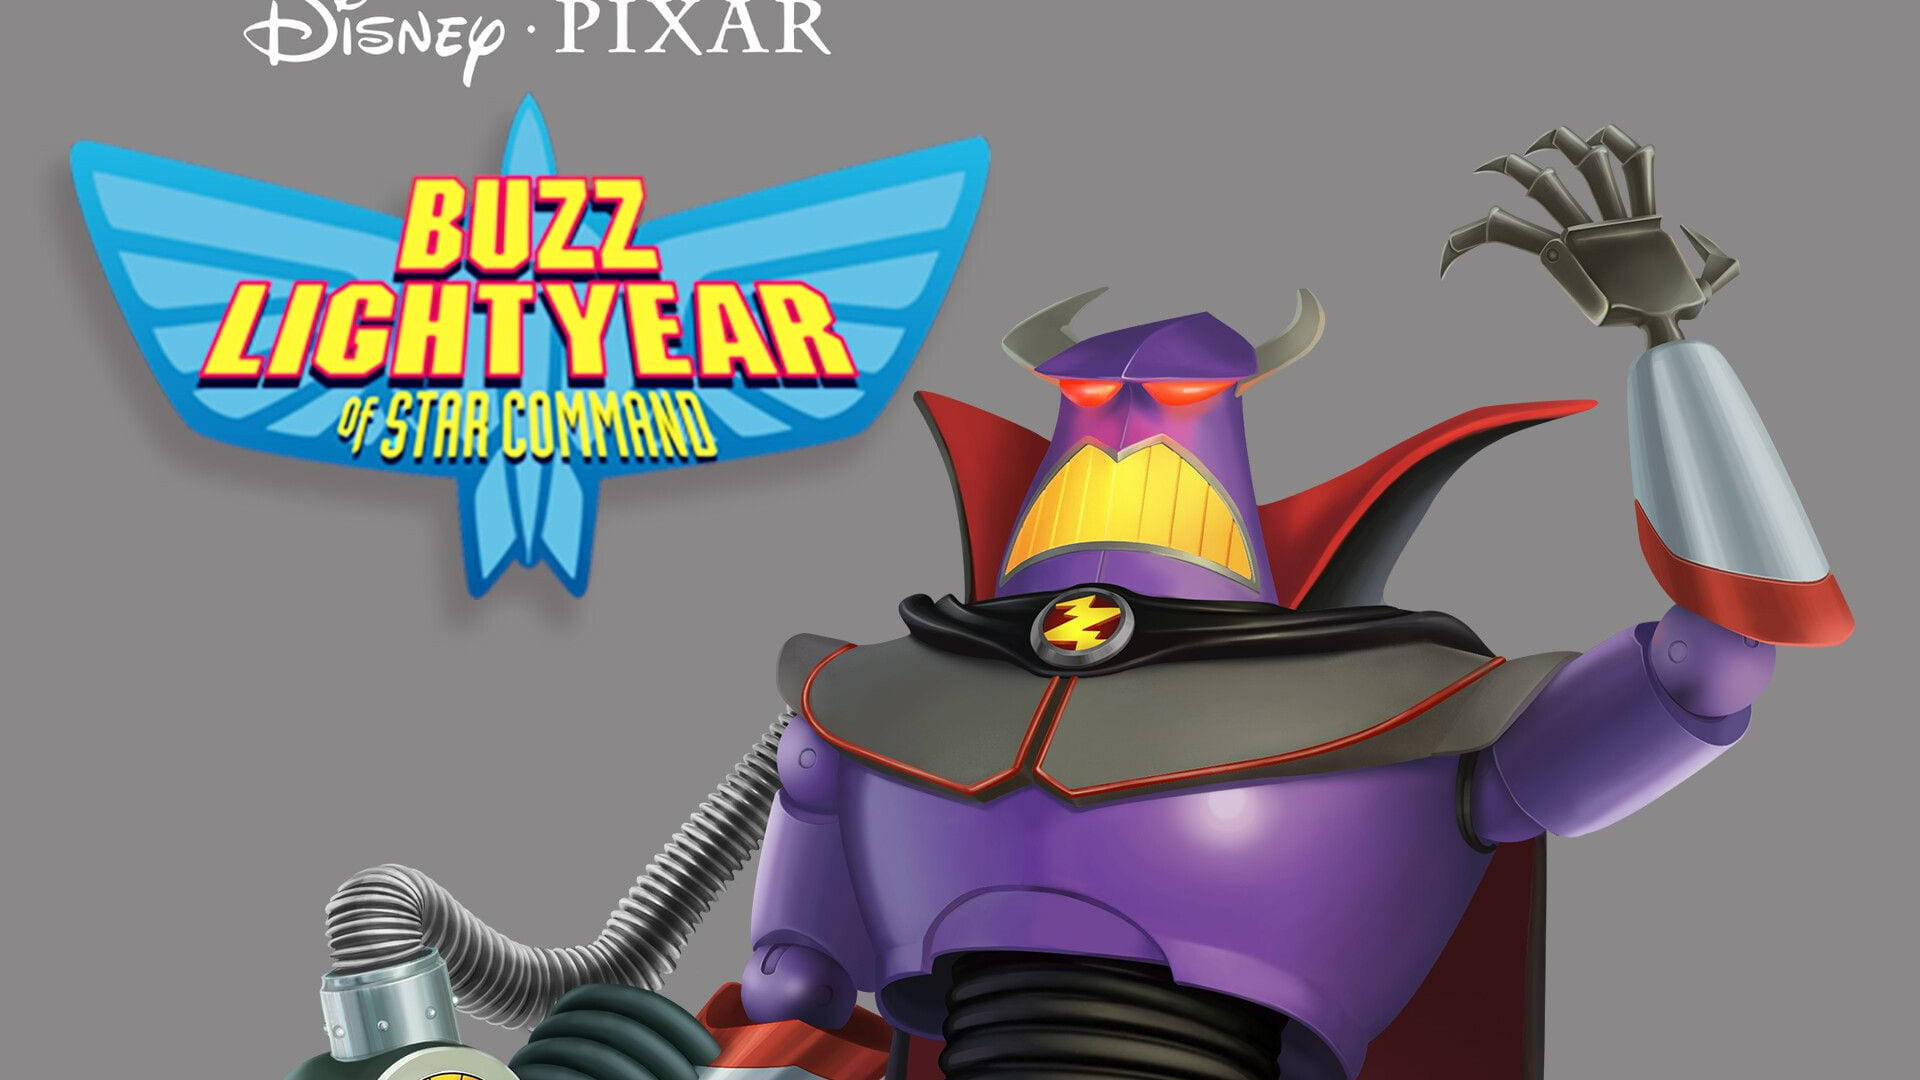 Buzz Lightyear Of Star Command Zurg The Villain Wallpaper